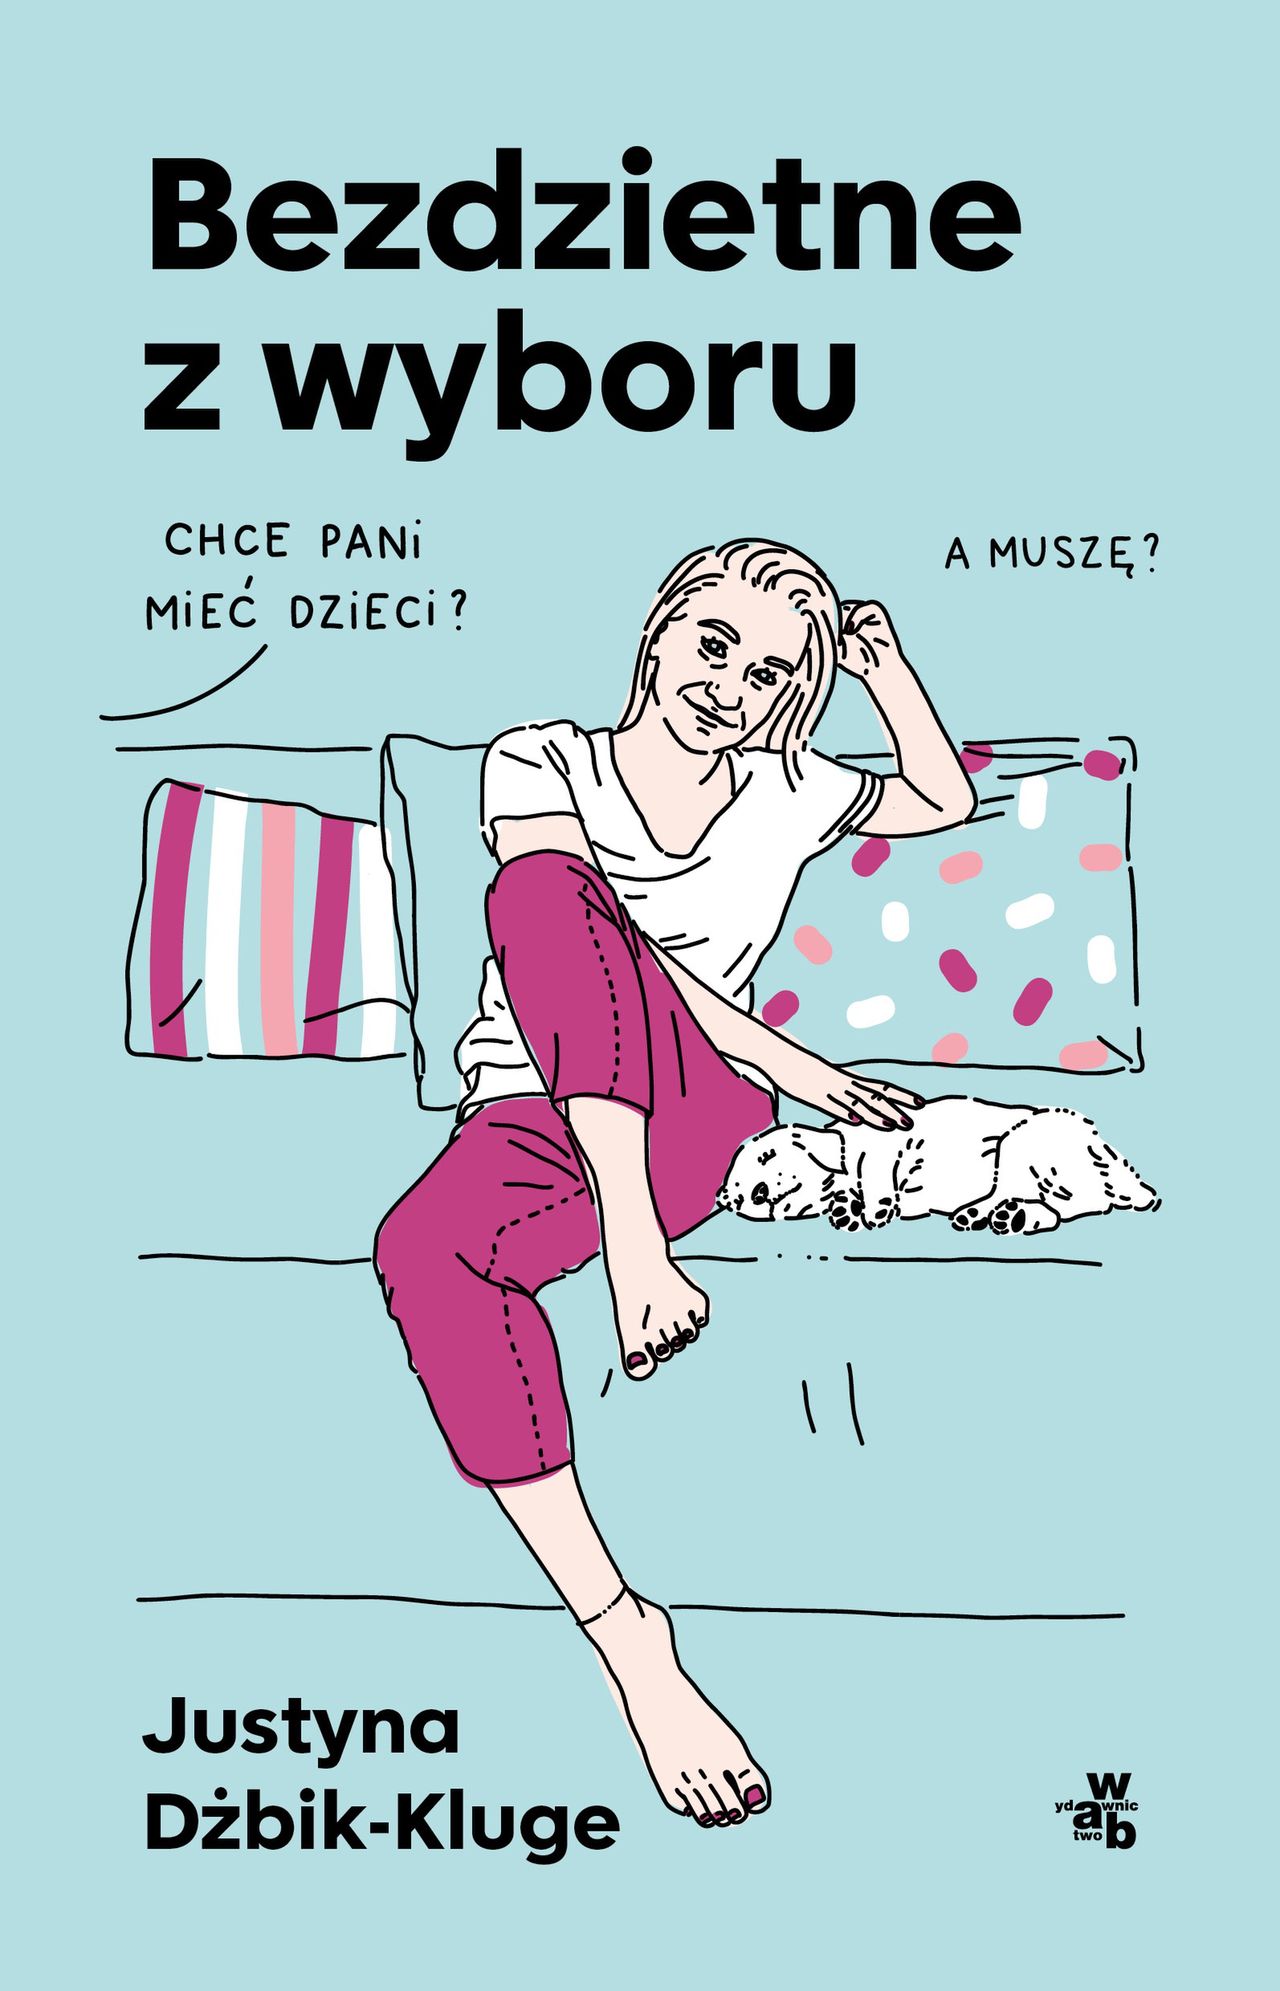 Okładka książki Justyny Dżbik-Kluge pt. "Bezdzietne z wyboru"